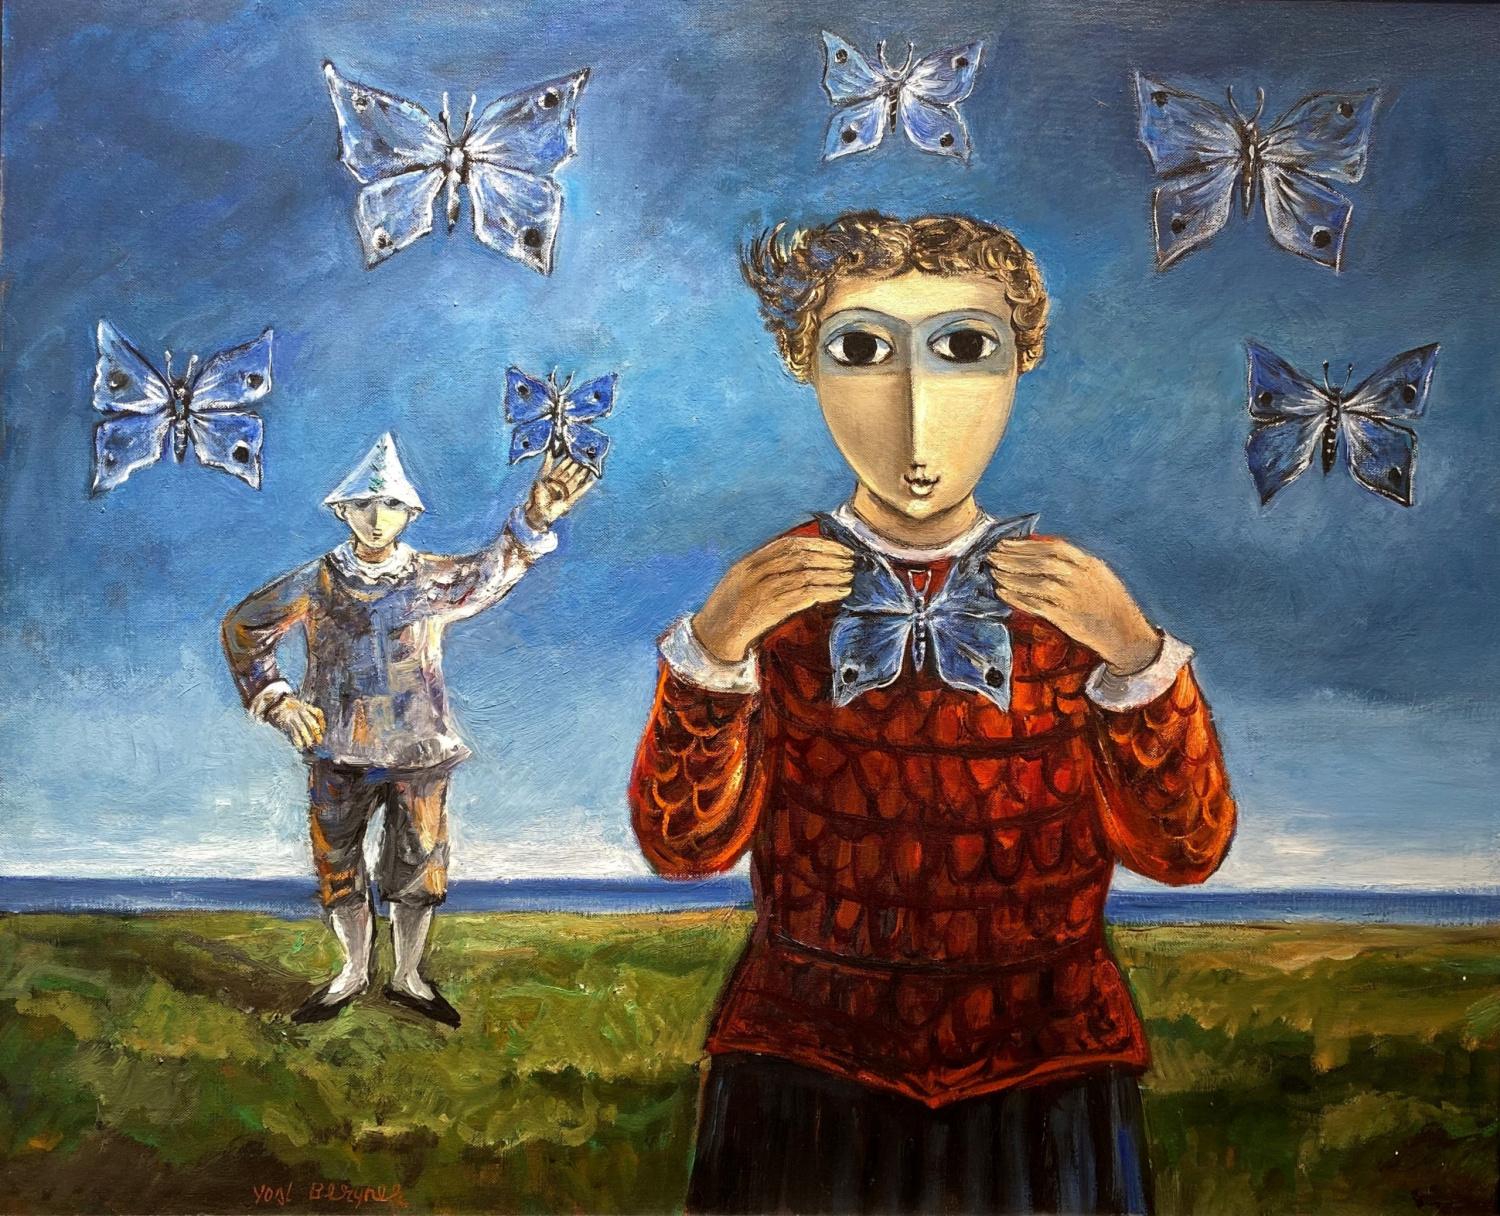 Yosl Bergner - A little girl - Kings Gallery - Fine Art - Jerusalem - Israeli art - Israeli artist - International art.